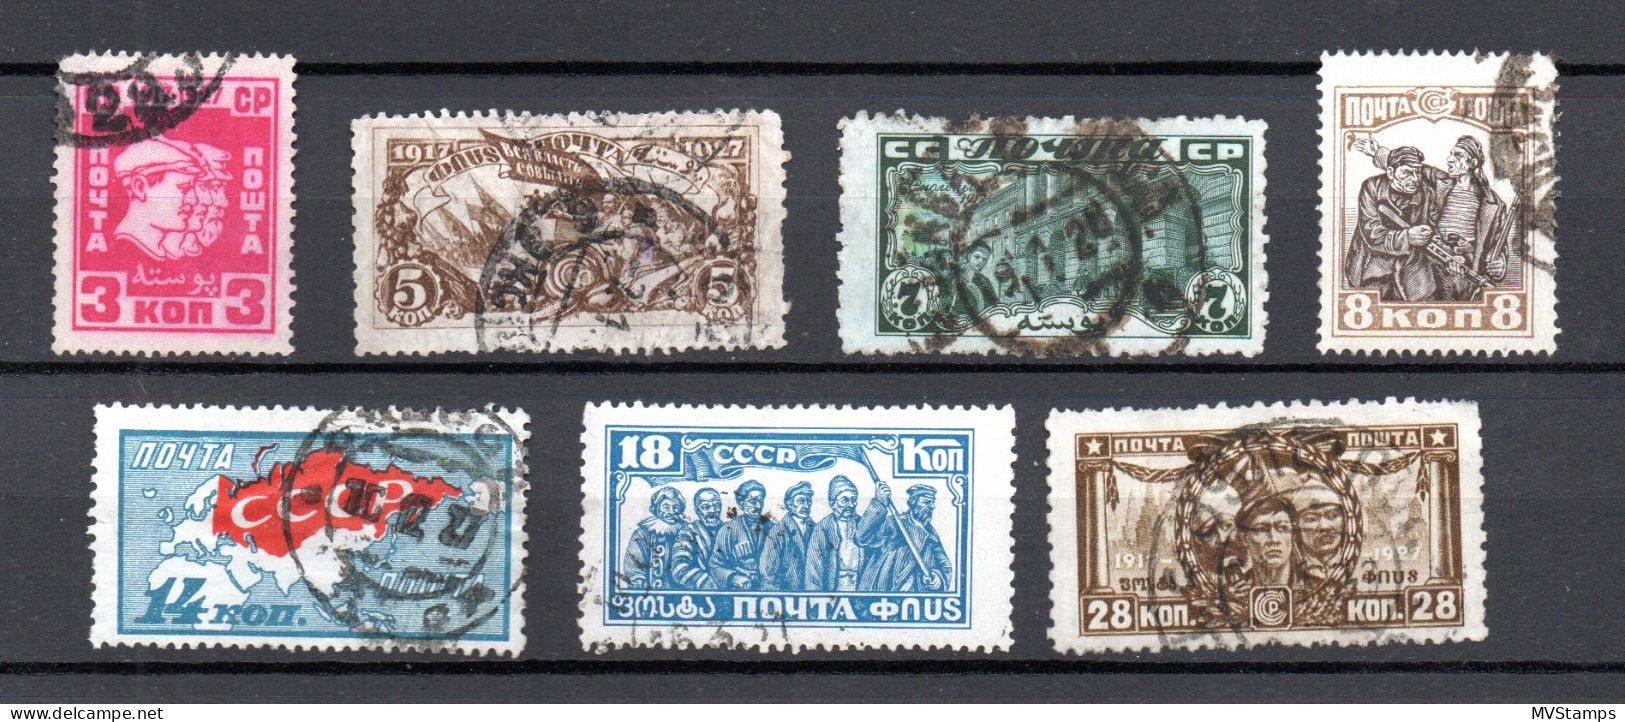 Russia 1941 Old 20 Kon, W.Surikow Stamp (Michel 814) Nice MLH - Gebraucht